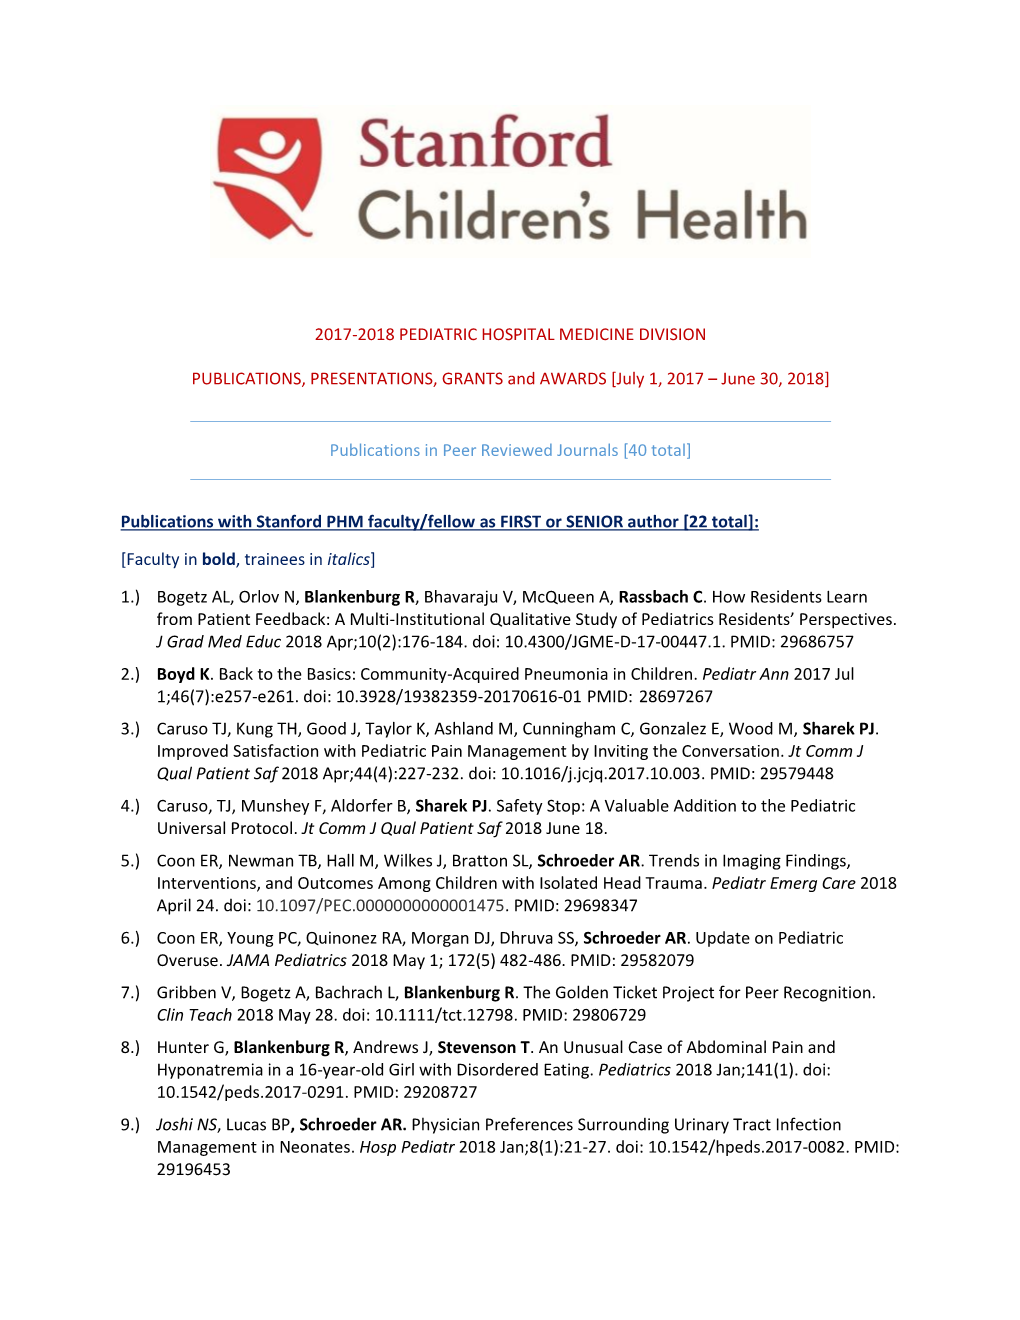 2017-2018 Pediatric Hospital Medicine Division